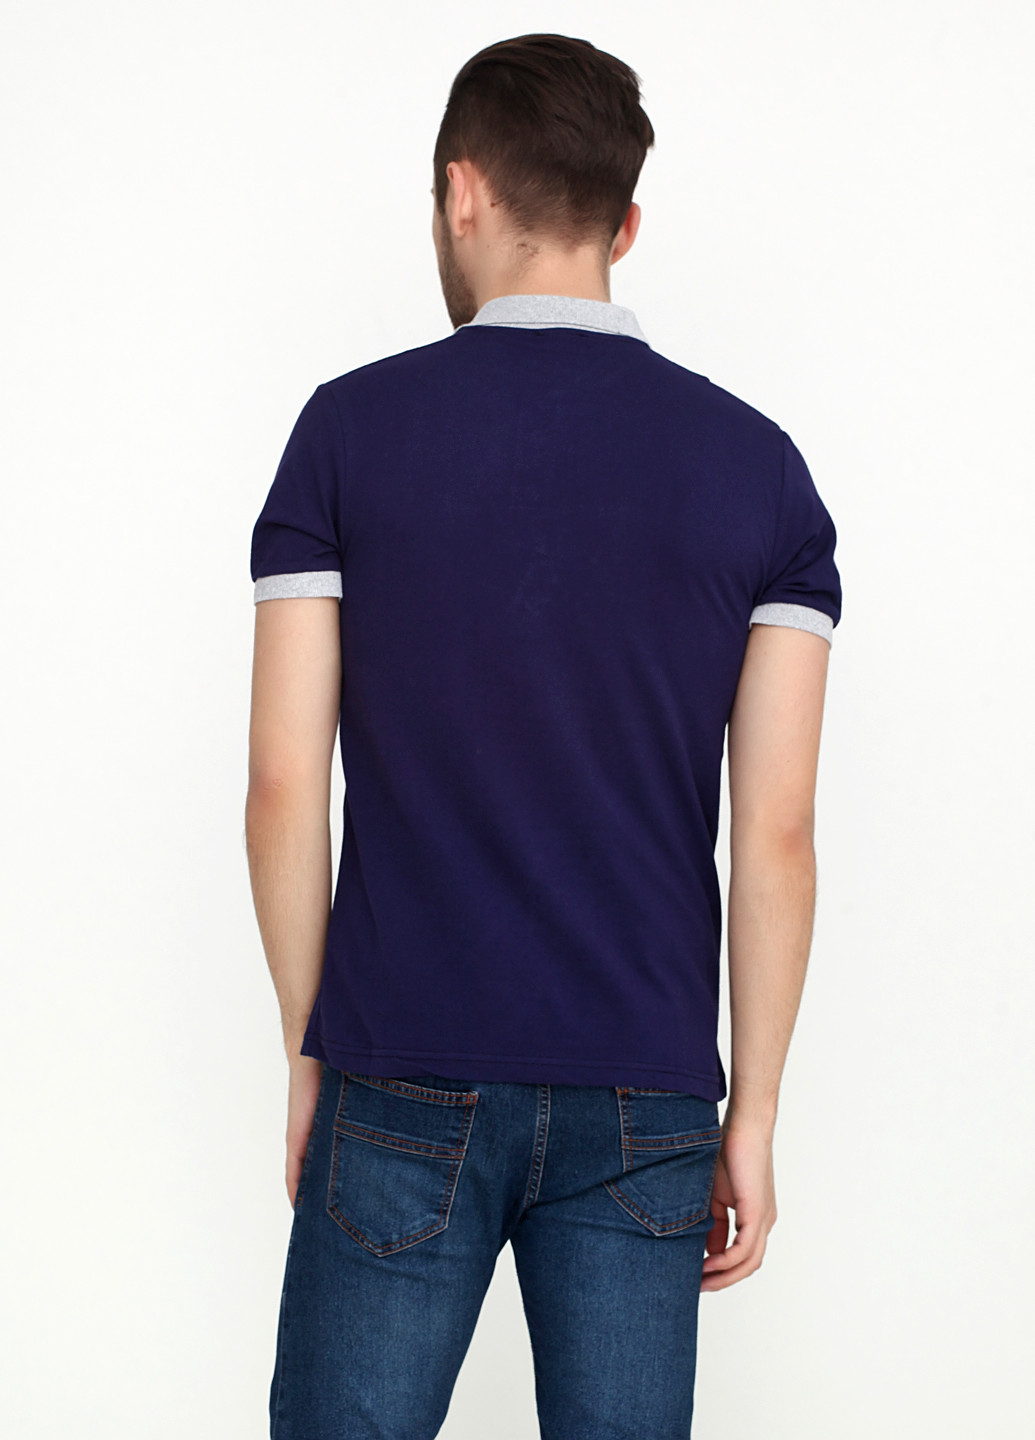 Фиолетовая футболка-поло для мужчин Chiarotex с логотипом